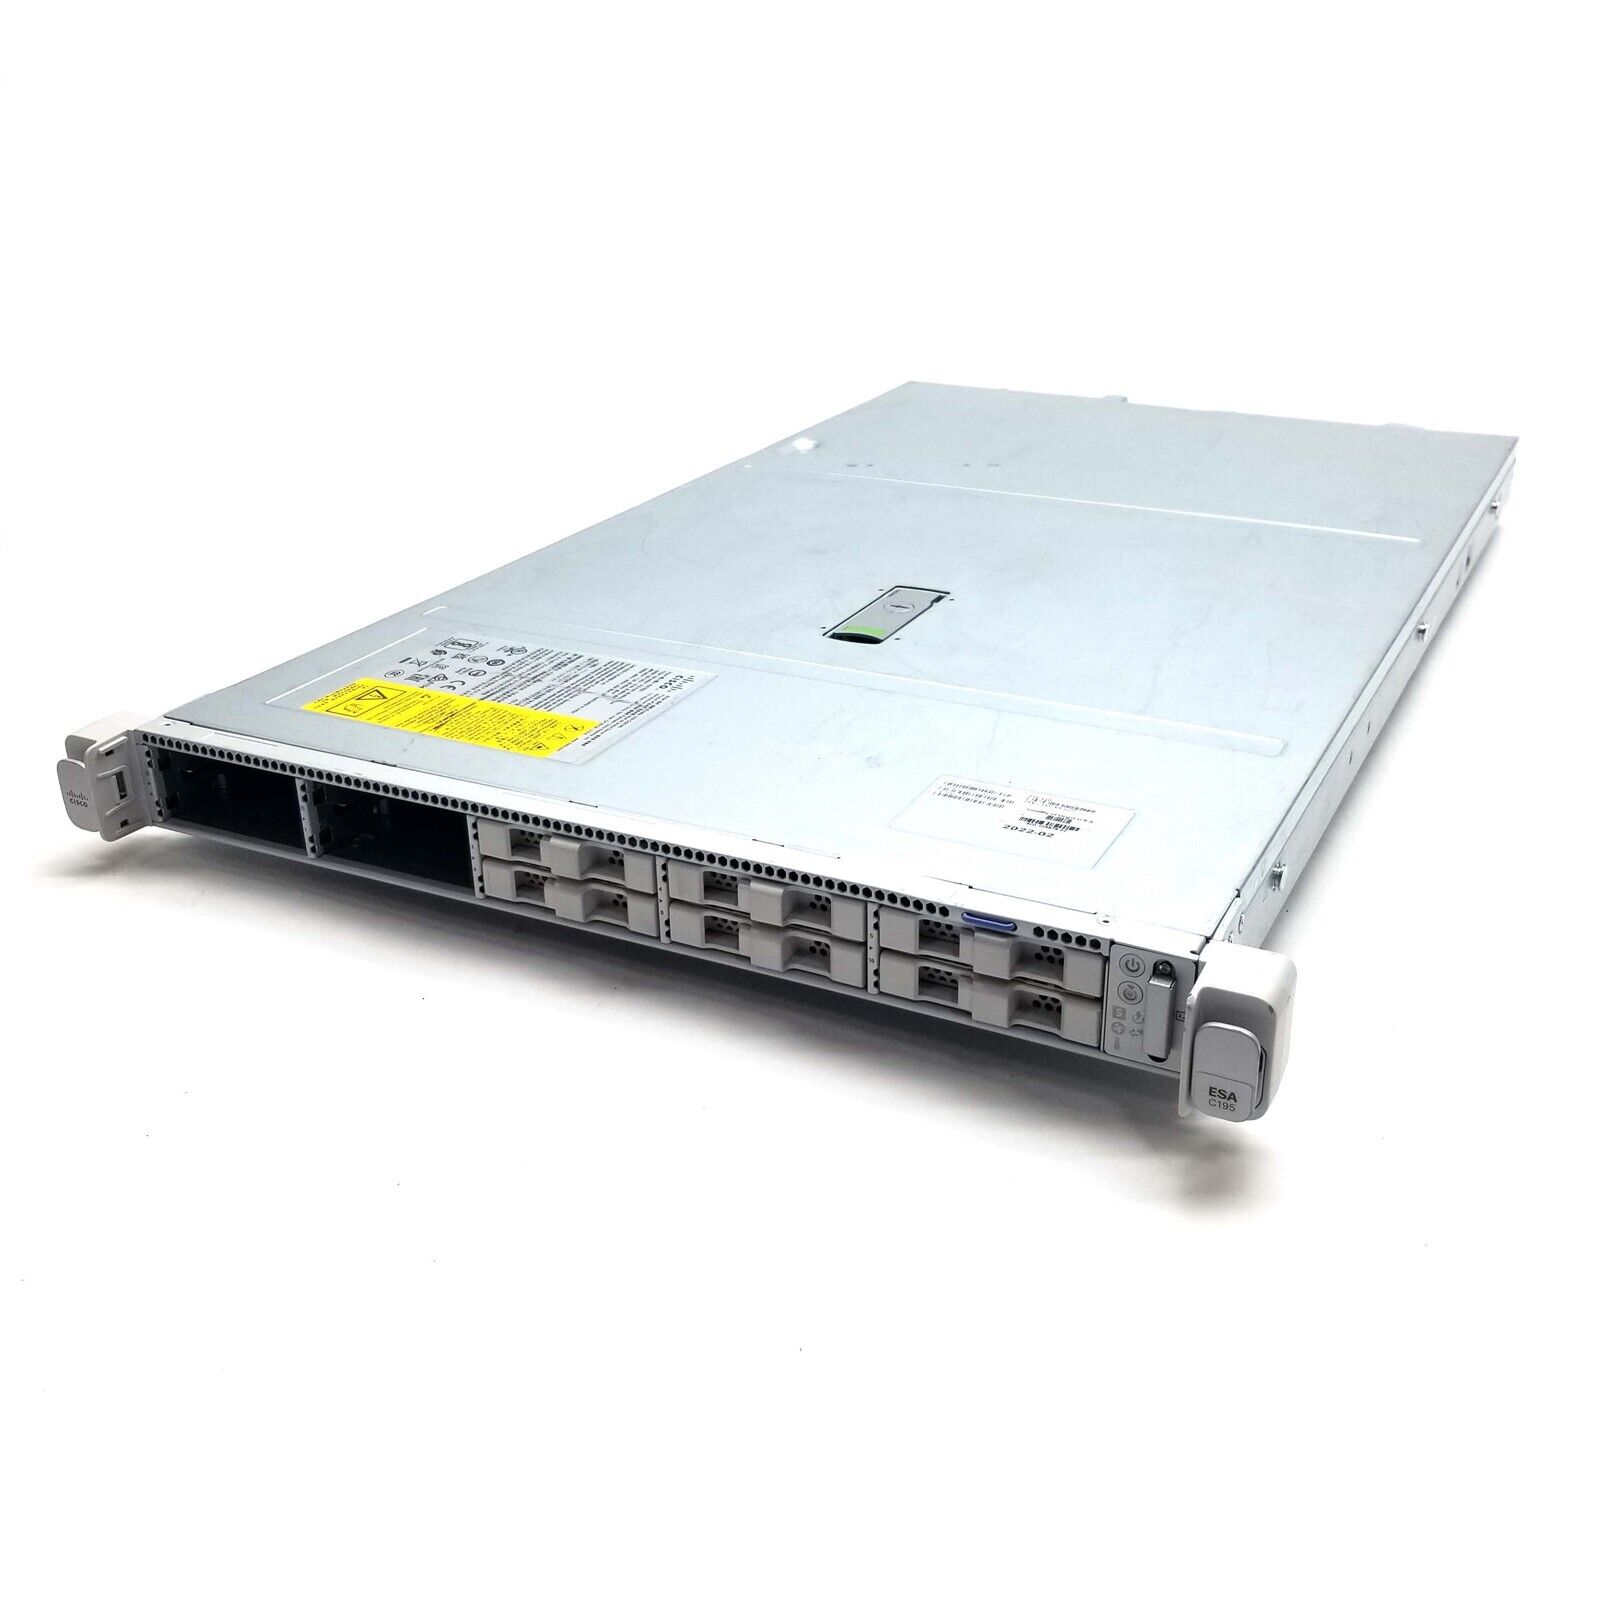 Cisco UCS C220 M5 10-Bay SFF Rack Server 1U Barebone No CPU, Ram, HDD, PS